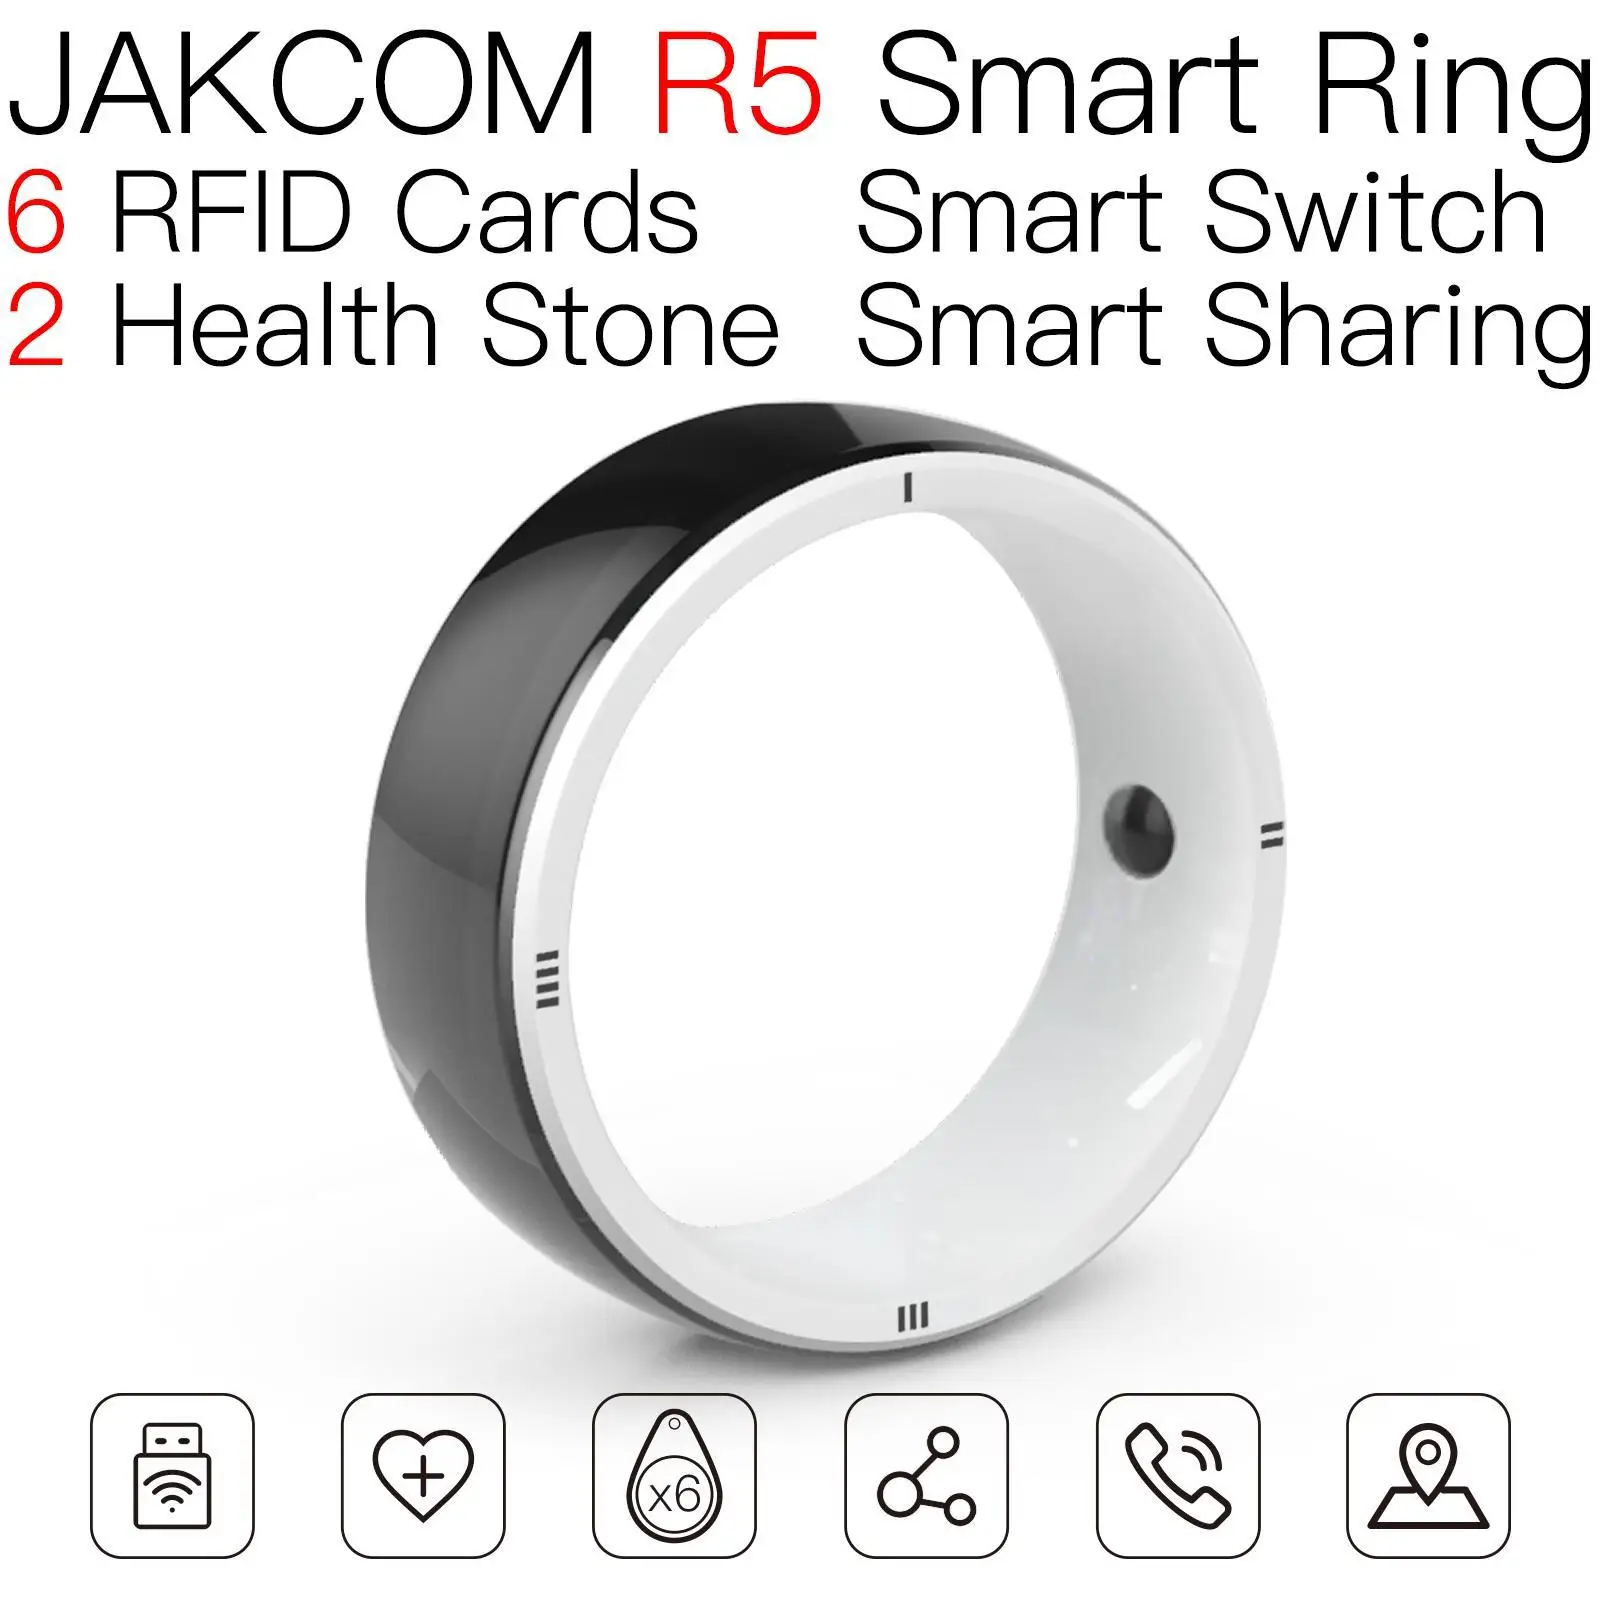 

Умное кольцо JAKCOM R5, подходит к катушке, 5 ярлыков, 215, 1000 шт., смарт-карты на базе android 11, рчид, 125 кГц, перезаписываемая антенна 902 uhf